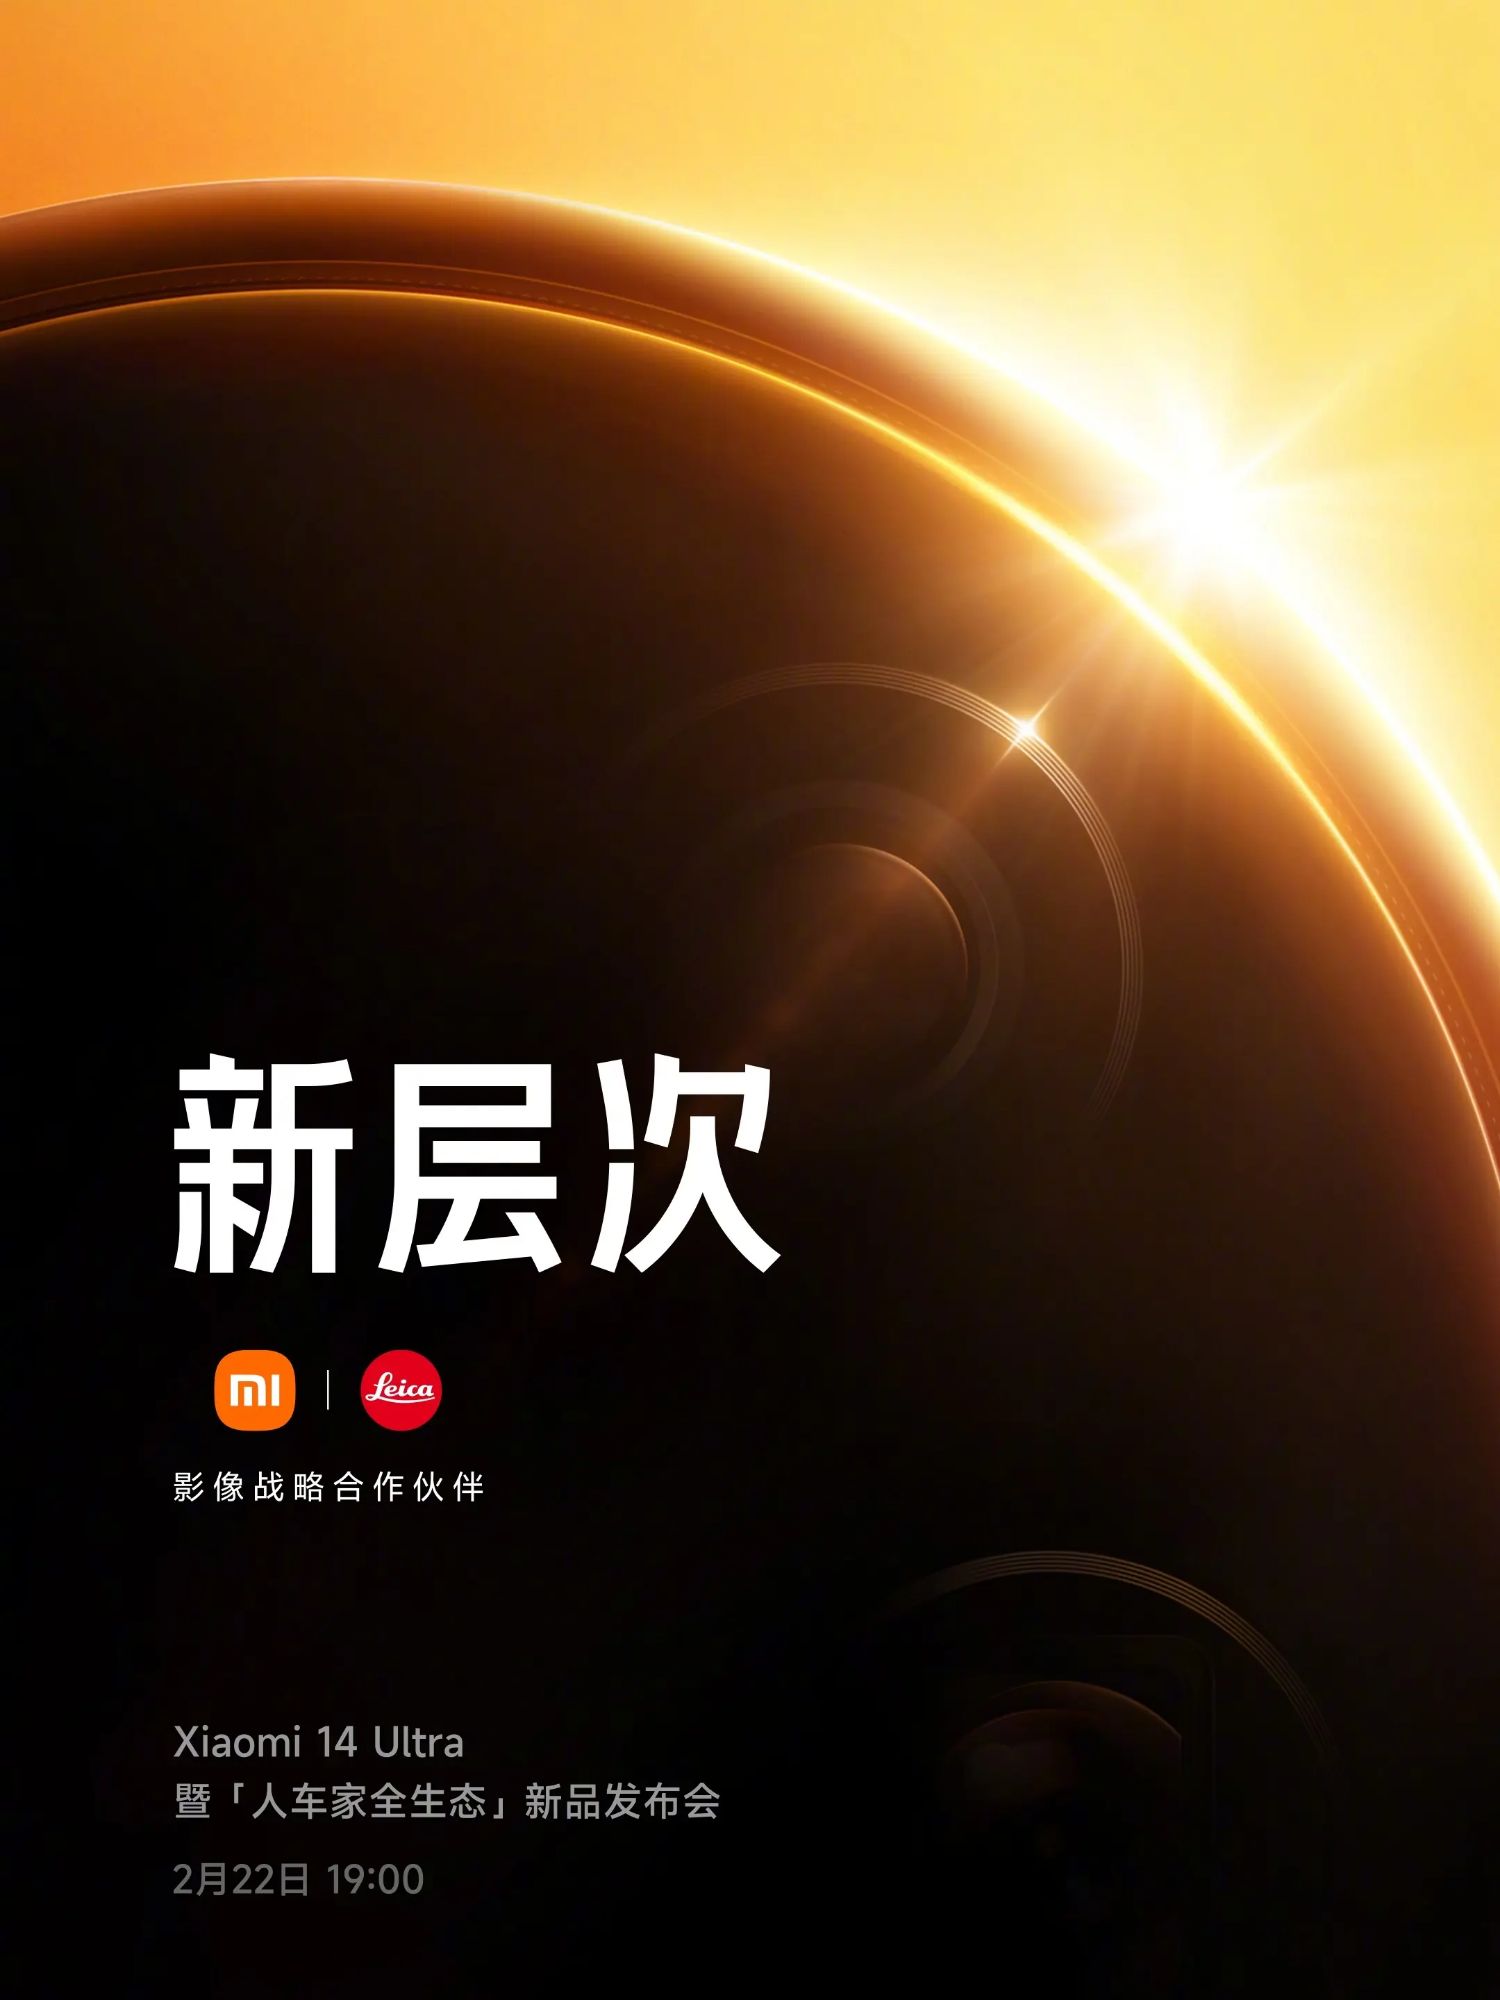 من المقرر ظهور Xiaomi 14 Ultra لأول مرة في الصين